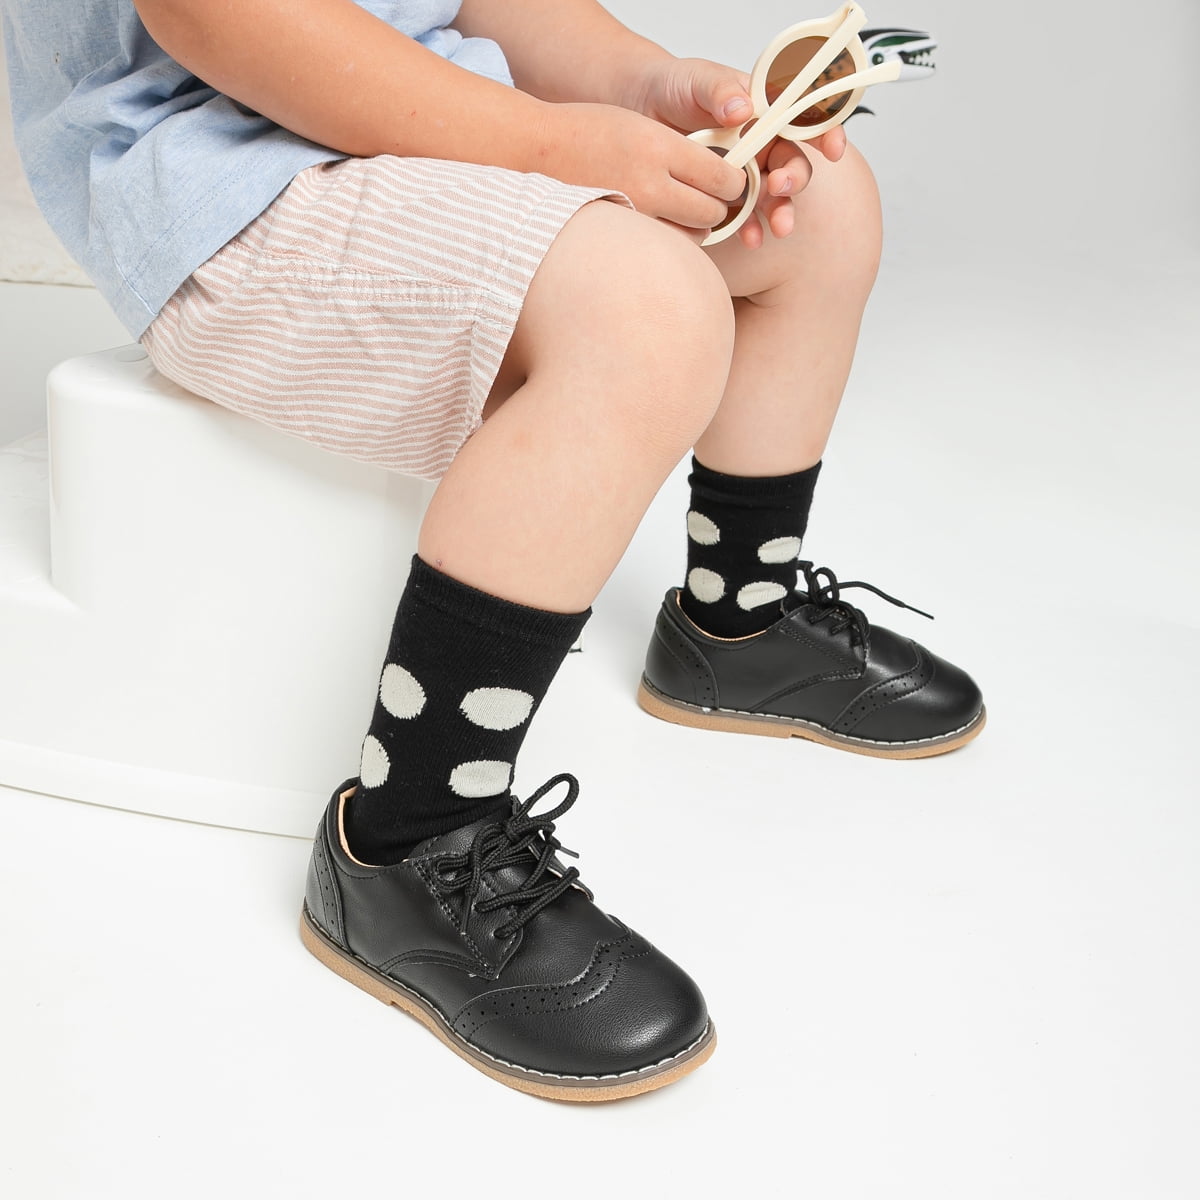  Meckior Zapatos de vestir para niños y niñas, zapatos